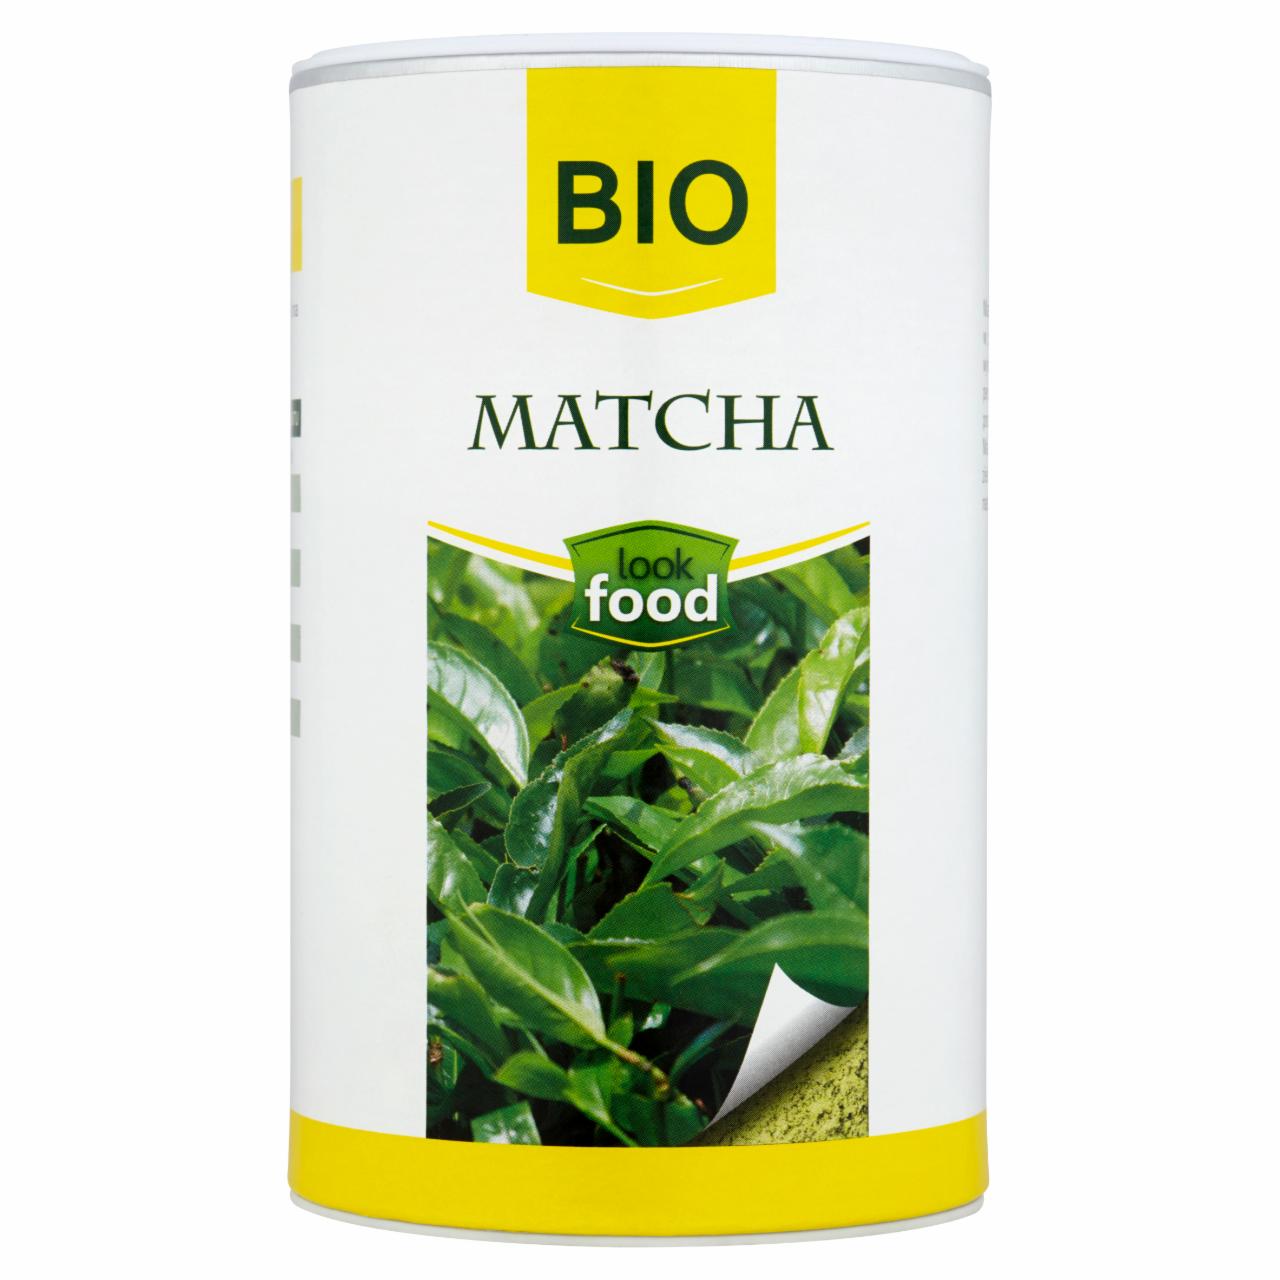 Zdjęcia - Look Food Bio Matcha 100 g